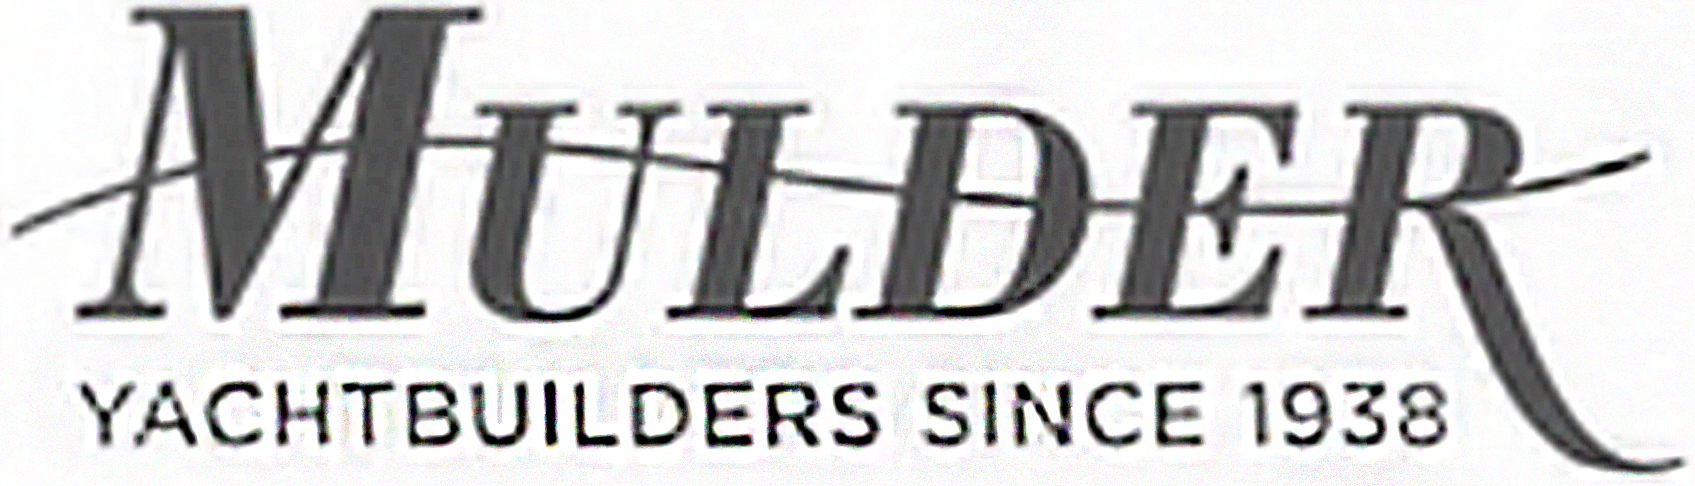 Mulder shipyard logo Metalfinish Group